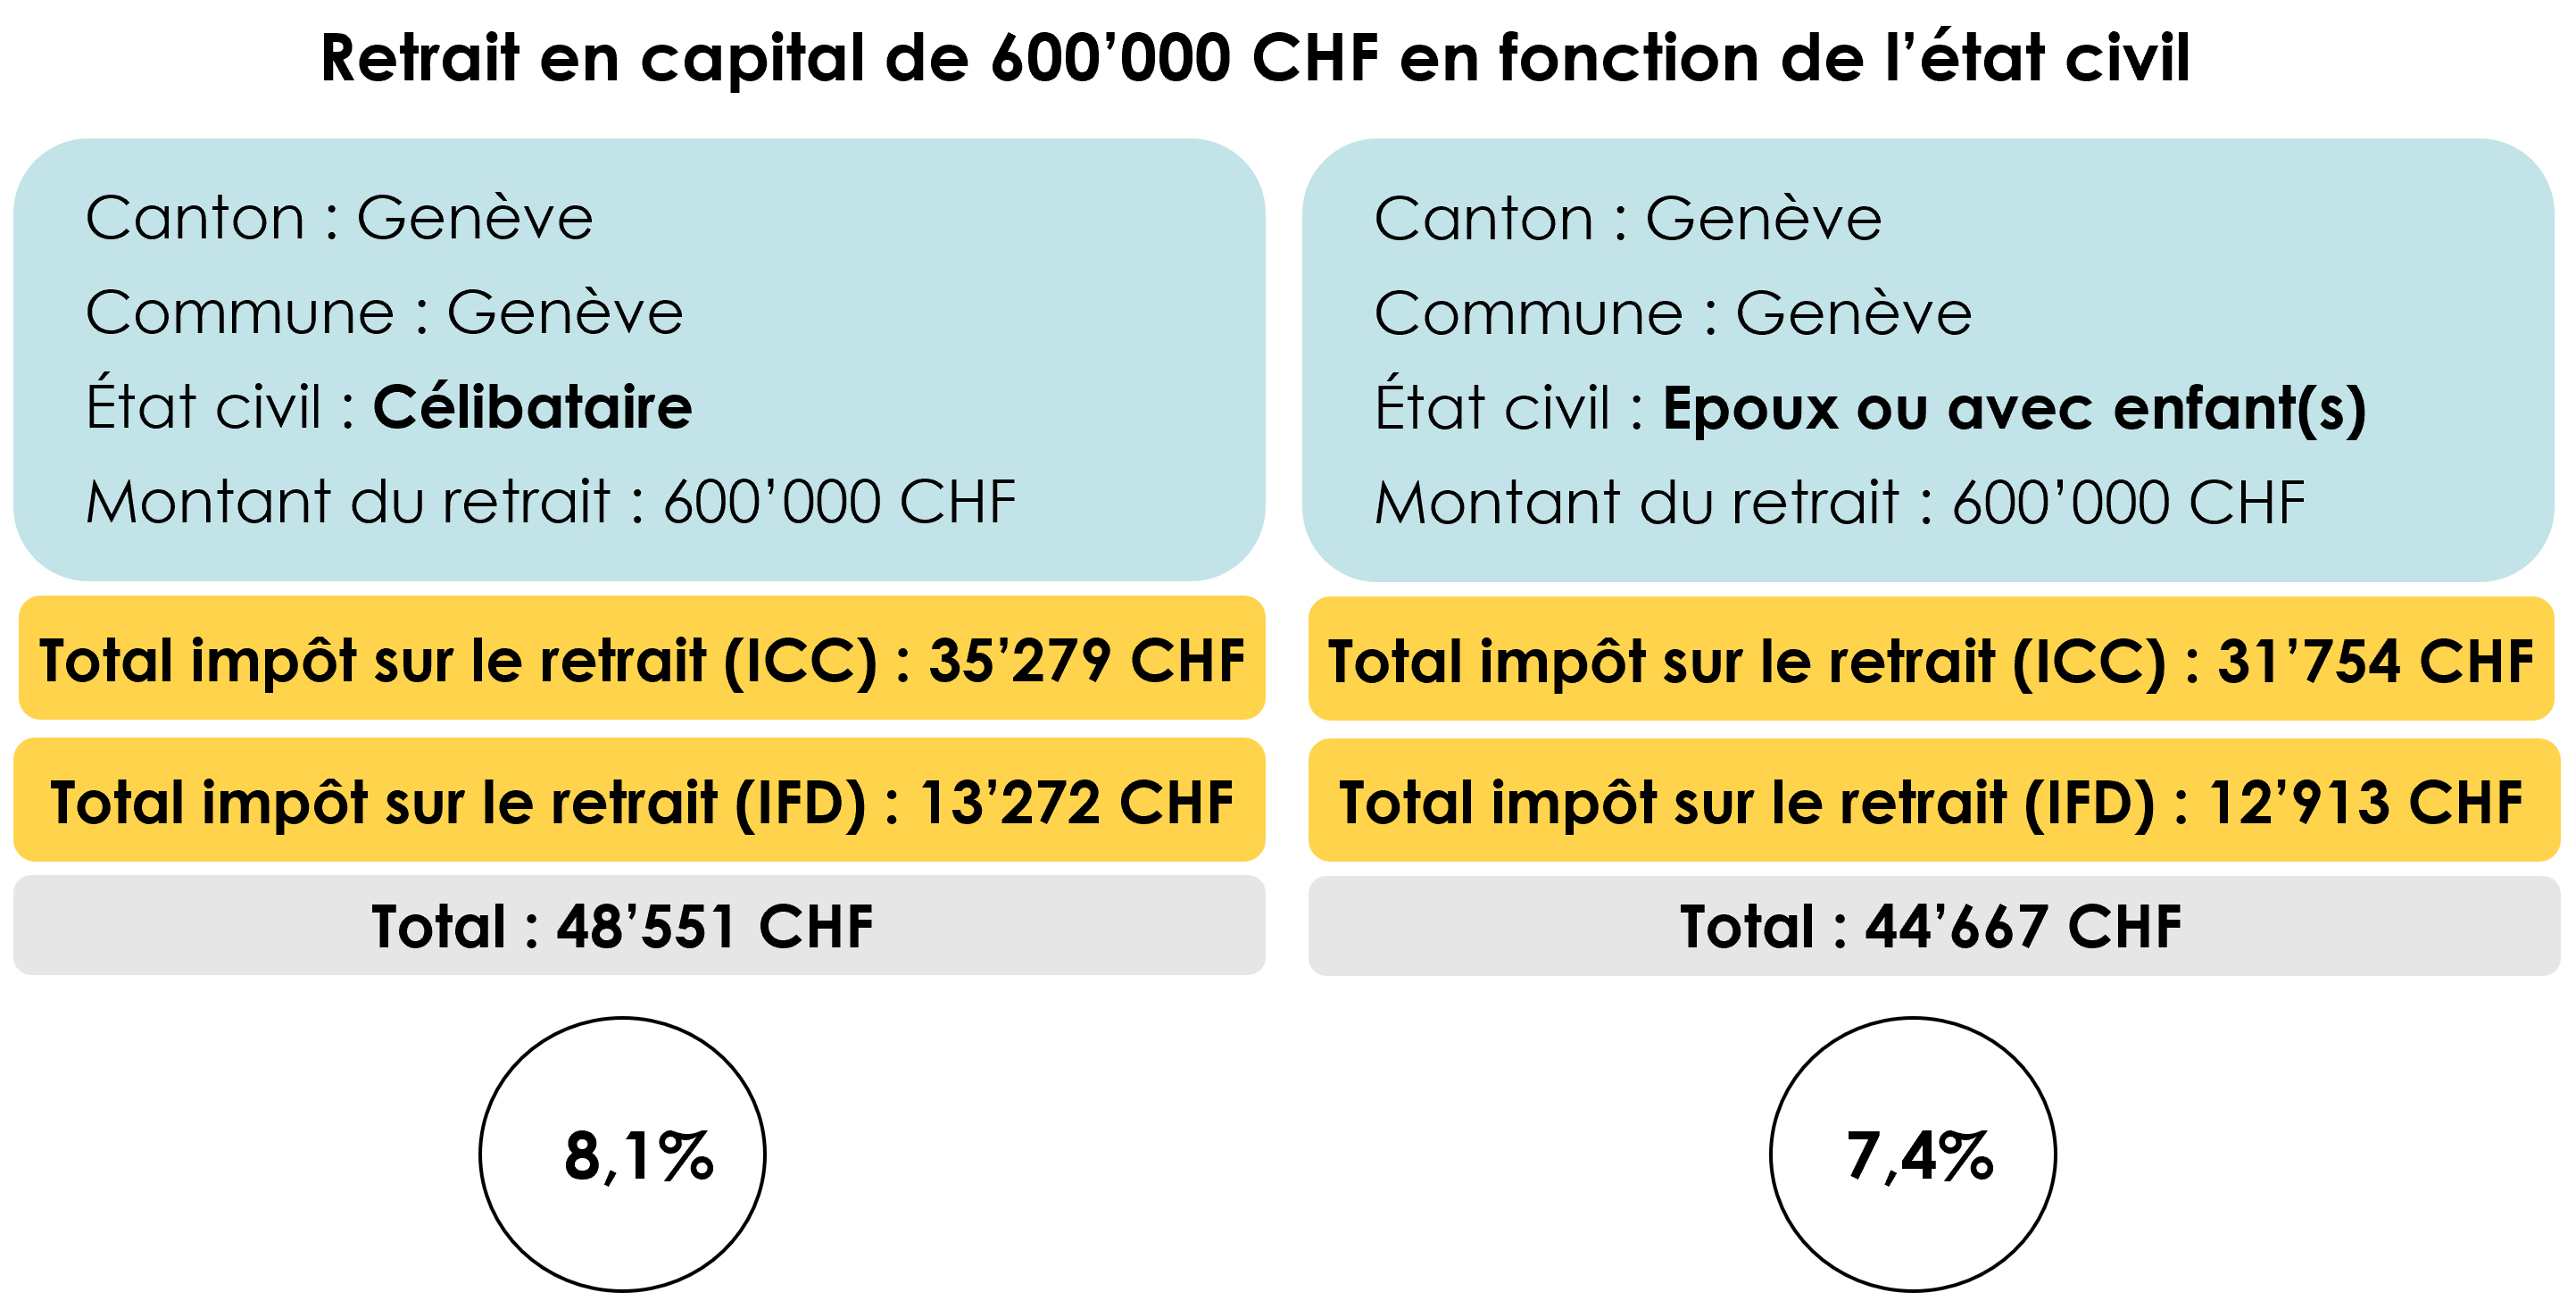 Exemple de calcul de l’impôt en fonction de l’état civil sur le retrait en capital du 2ème pilier d’un montant de 600’000 CHF